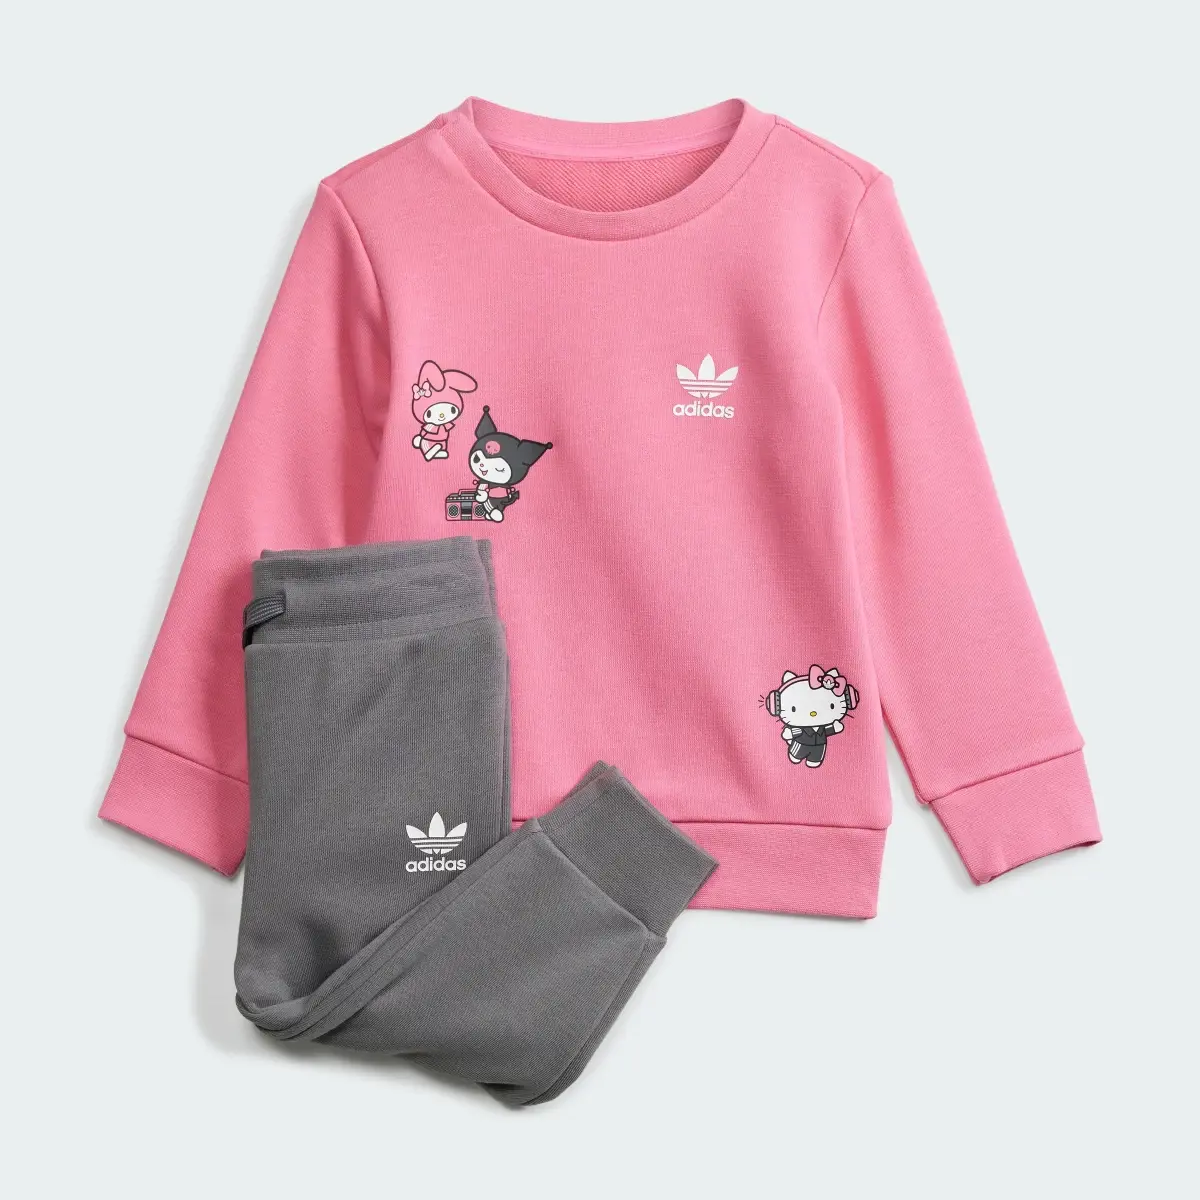 Adidas Originals x Hello Kitty Eşofman Takımı. 2